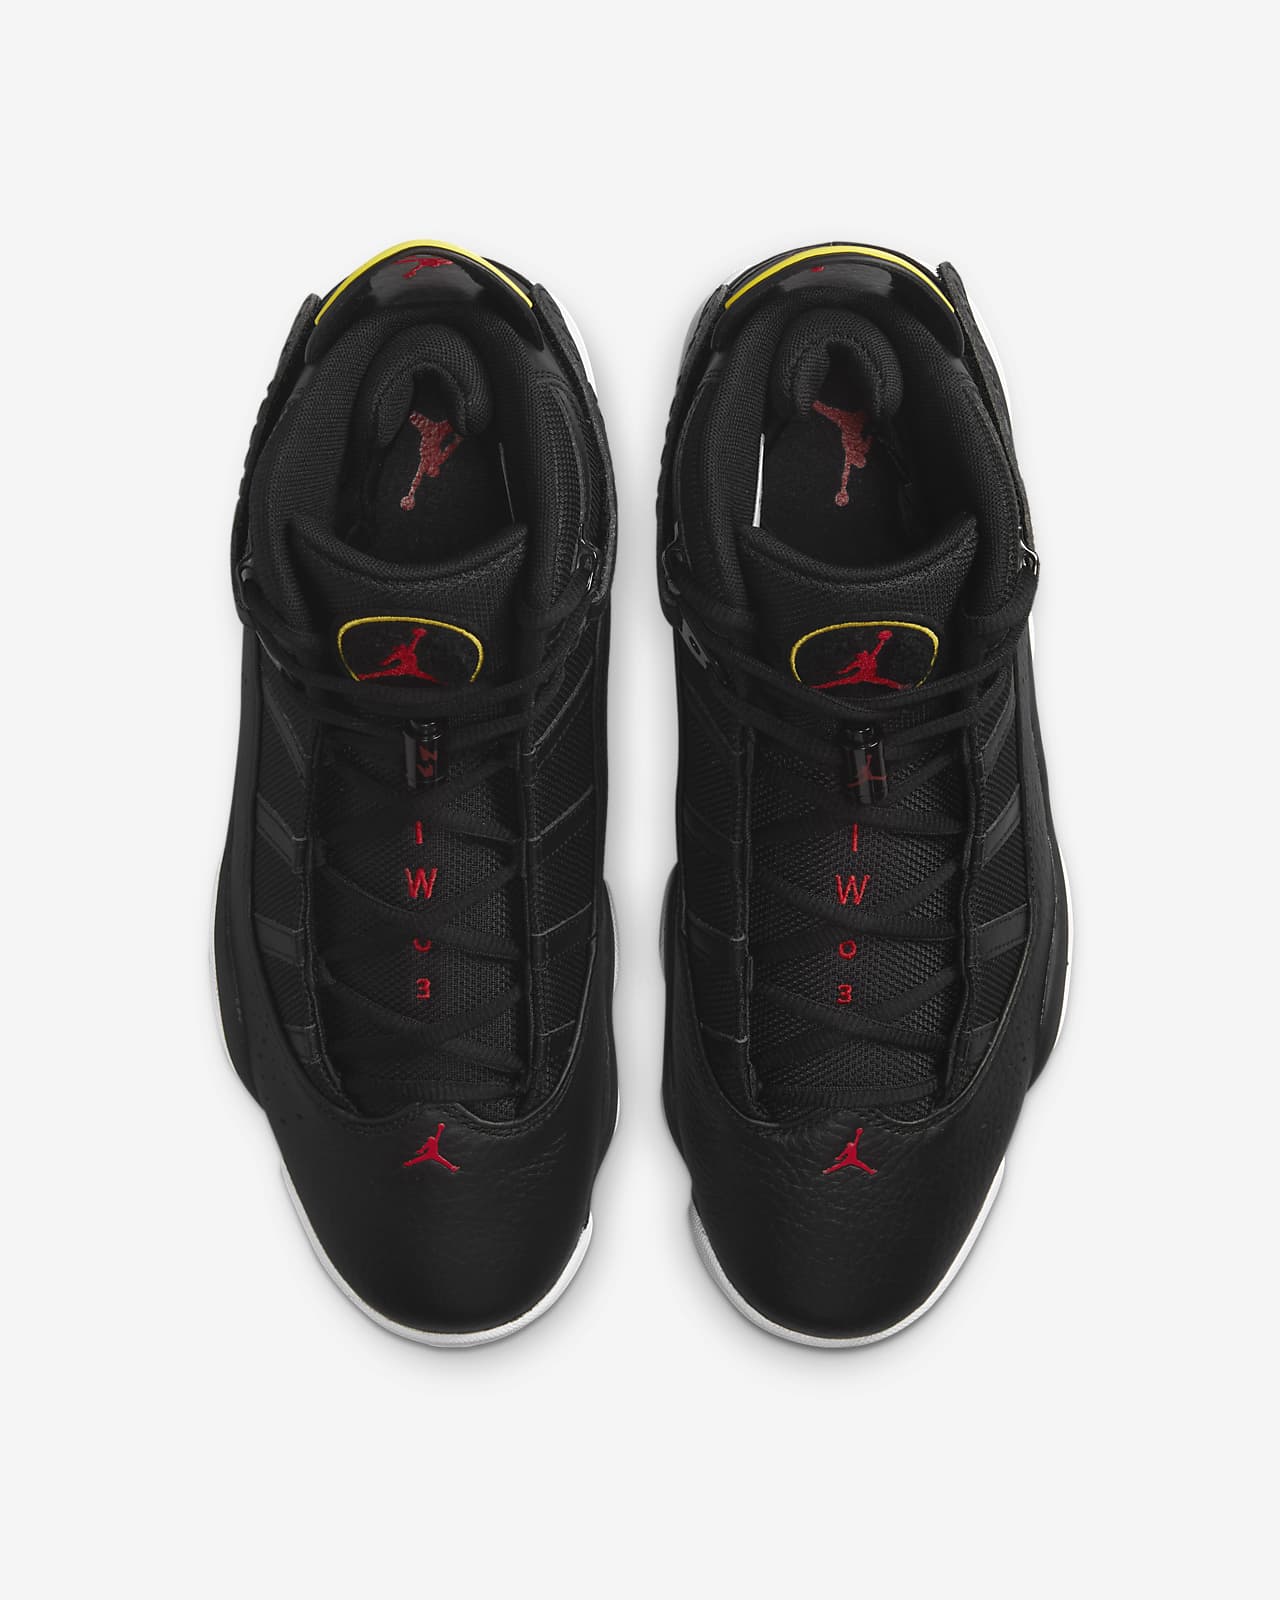 Jordan 6 Rings Zapatillas - Hombre. Nike ES عطر ديور روز